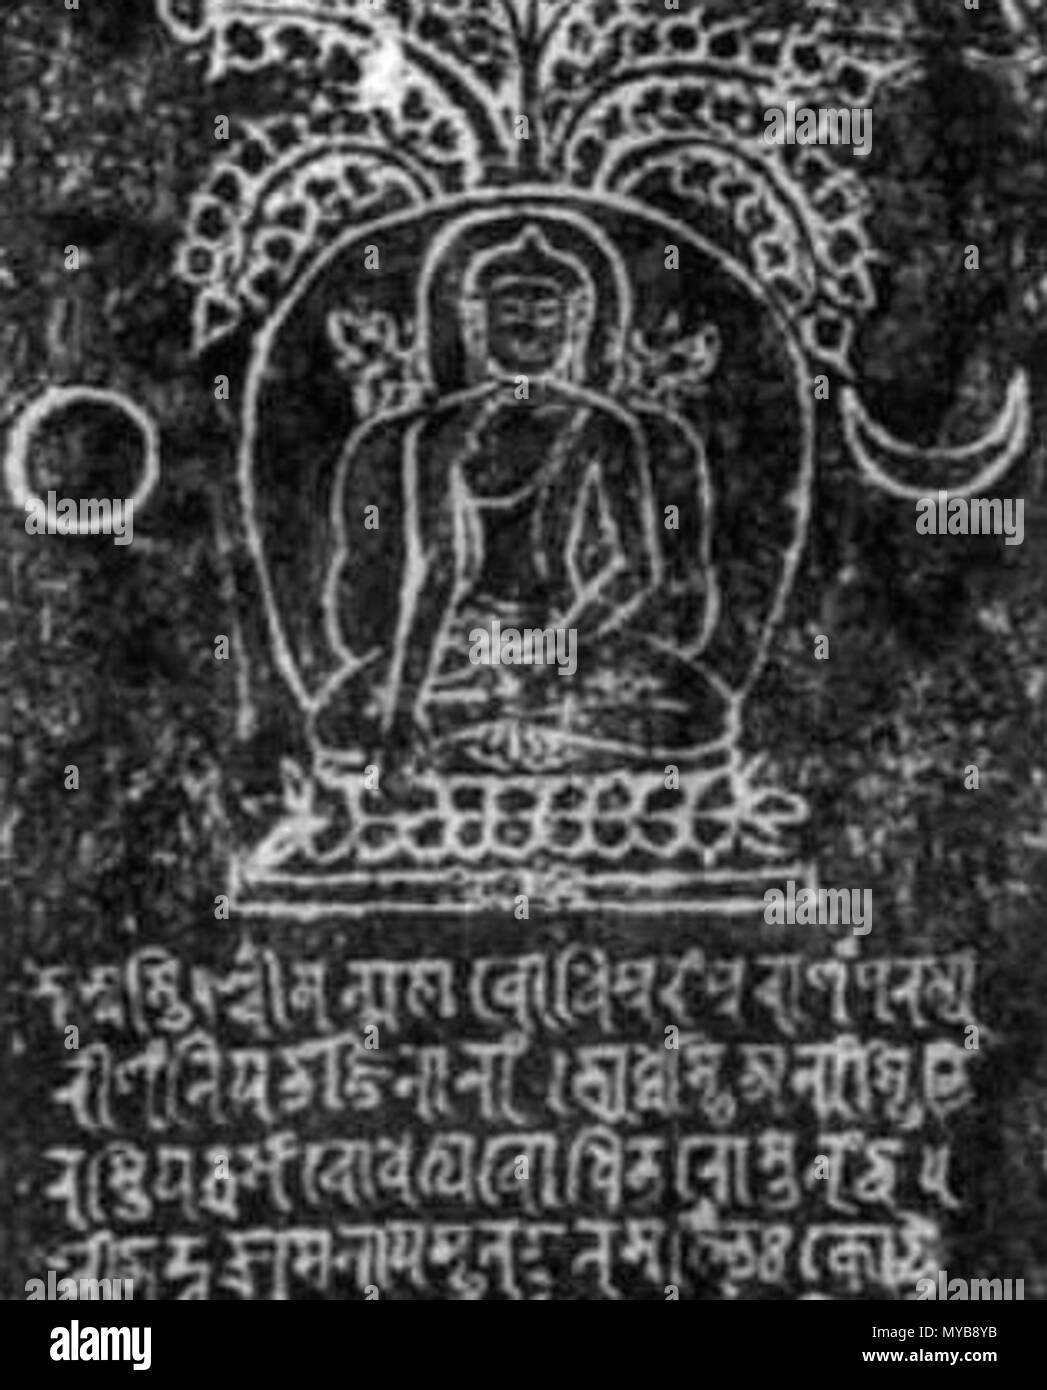 . Anglais : manuscrit Sanskrit en utilisant le script Ranjana, avec une illustration de la Bouddha assis sous l'arbre de la Bodhi, jour et nuit. Manuscrit soit à partir de l'Inde ou le Népal, date inconnue. Date inconnue, env. Il y a 1000 ans.. Artiste de l'Inde ancienne anonyme ou le Népal. 89 Arbre de Bodhi Bouddha Manuscrit Sanskrit Banque D'Images